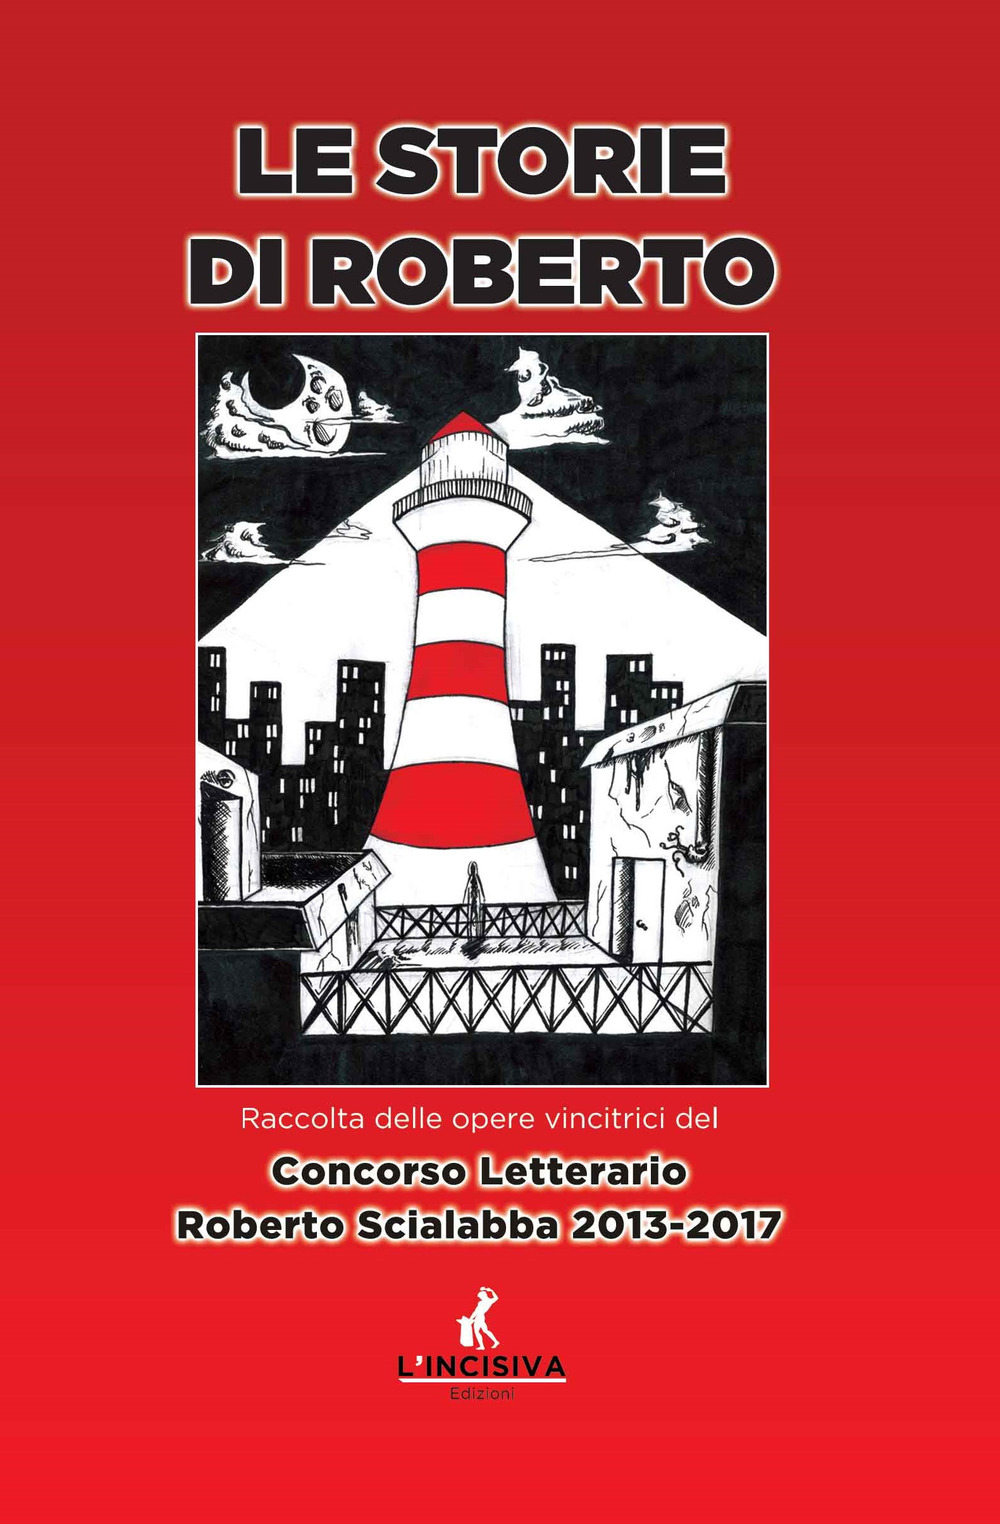 Le storie di Roberto. Raccolta delle opere vincitrici del concorso letterario Roberto Scialabba 2013-2017